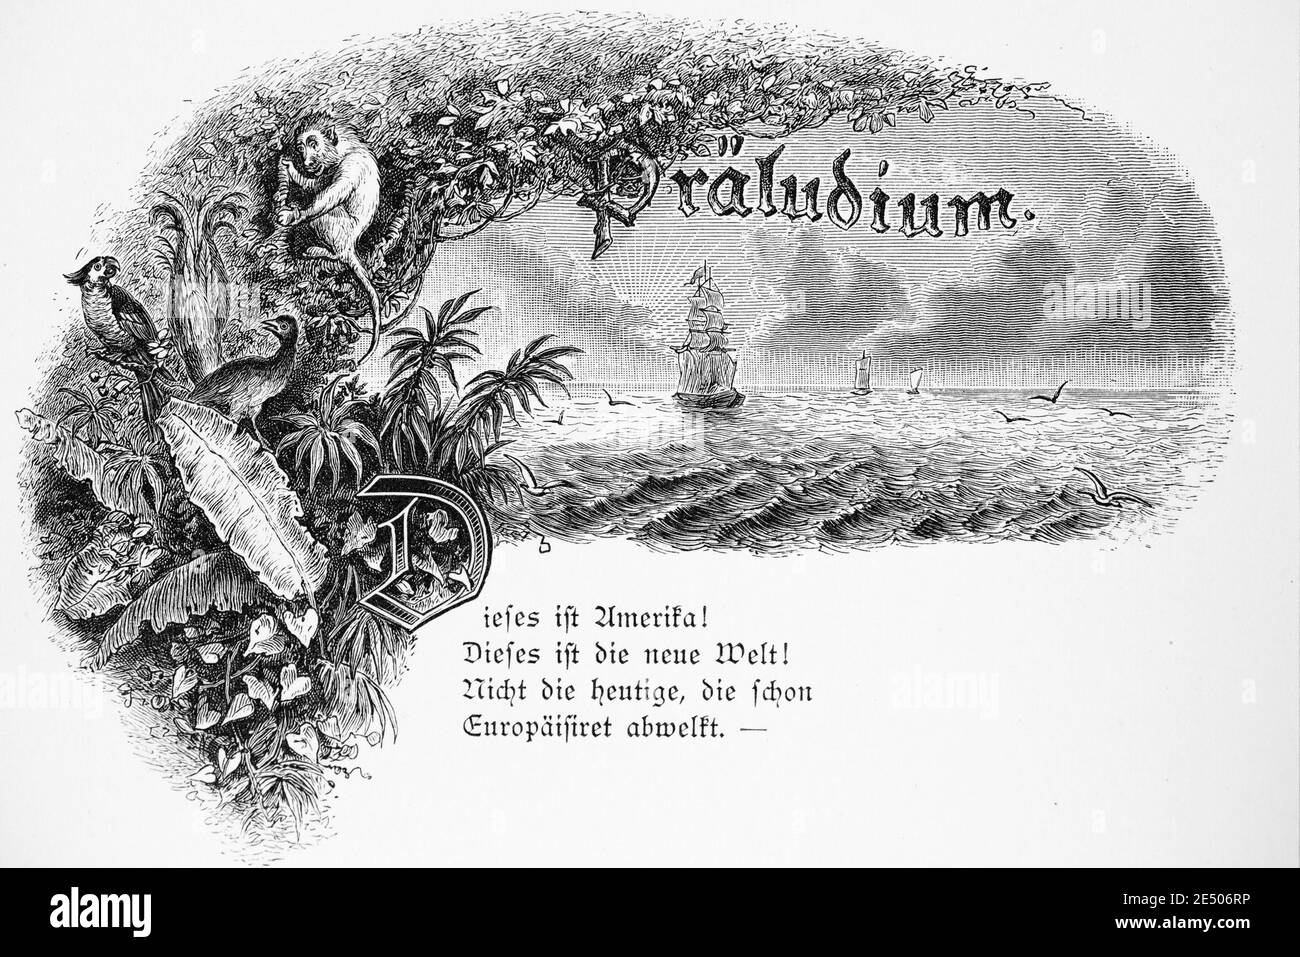 Illustrazione di Heine´s poema 'Präludium' o Prelude sul nuovo mondo America, scrittore e poeta tedesco Heinrich Heine, poesia raccolta Romancero,1880 Foto Stock